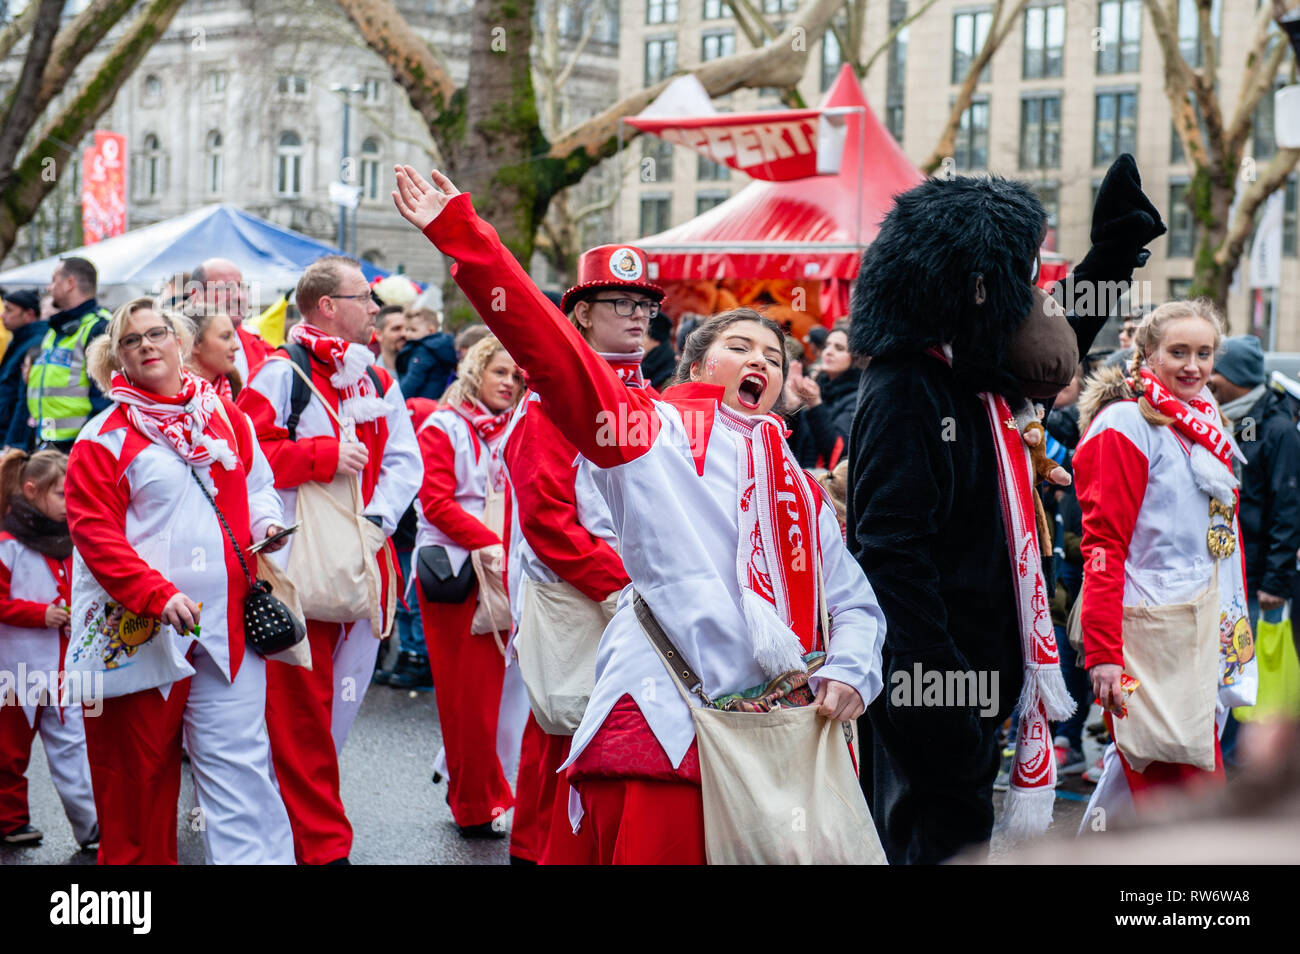 Eine Frau in einem Kostüm zu sehen ist: Helau auf die Masse während der Parade. In Düsseldorf, der Kalender der Karneval Veranstaltungen verfügt über nicht weniger als 300 Karneval zeigt, Bälle, Jubiläen, Empfänge und Kostüm Parteien. Das Motto dieser Saison ist "Gemeinsam Jeck" (gemeinsam Karneval). Die Feierlichkeiten ihren Höhepunkt in der Rose Montag Parade. Mehr als 30 Ensembles und 5.000 Teilnehmer an der Prozession durch die Stadt. Aufwändig gebaut und geschmückten Wagen Adresse kulturellen und politischen Fragen und Satirischen, lustigen und auch umstritten. Die politisch themed schwimmt der Satiriker Stockfoto